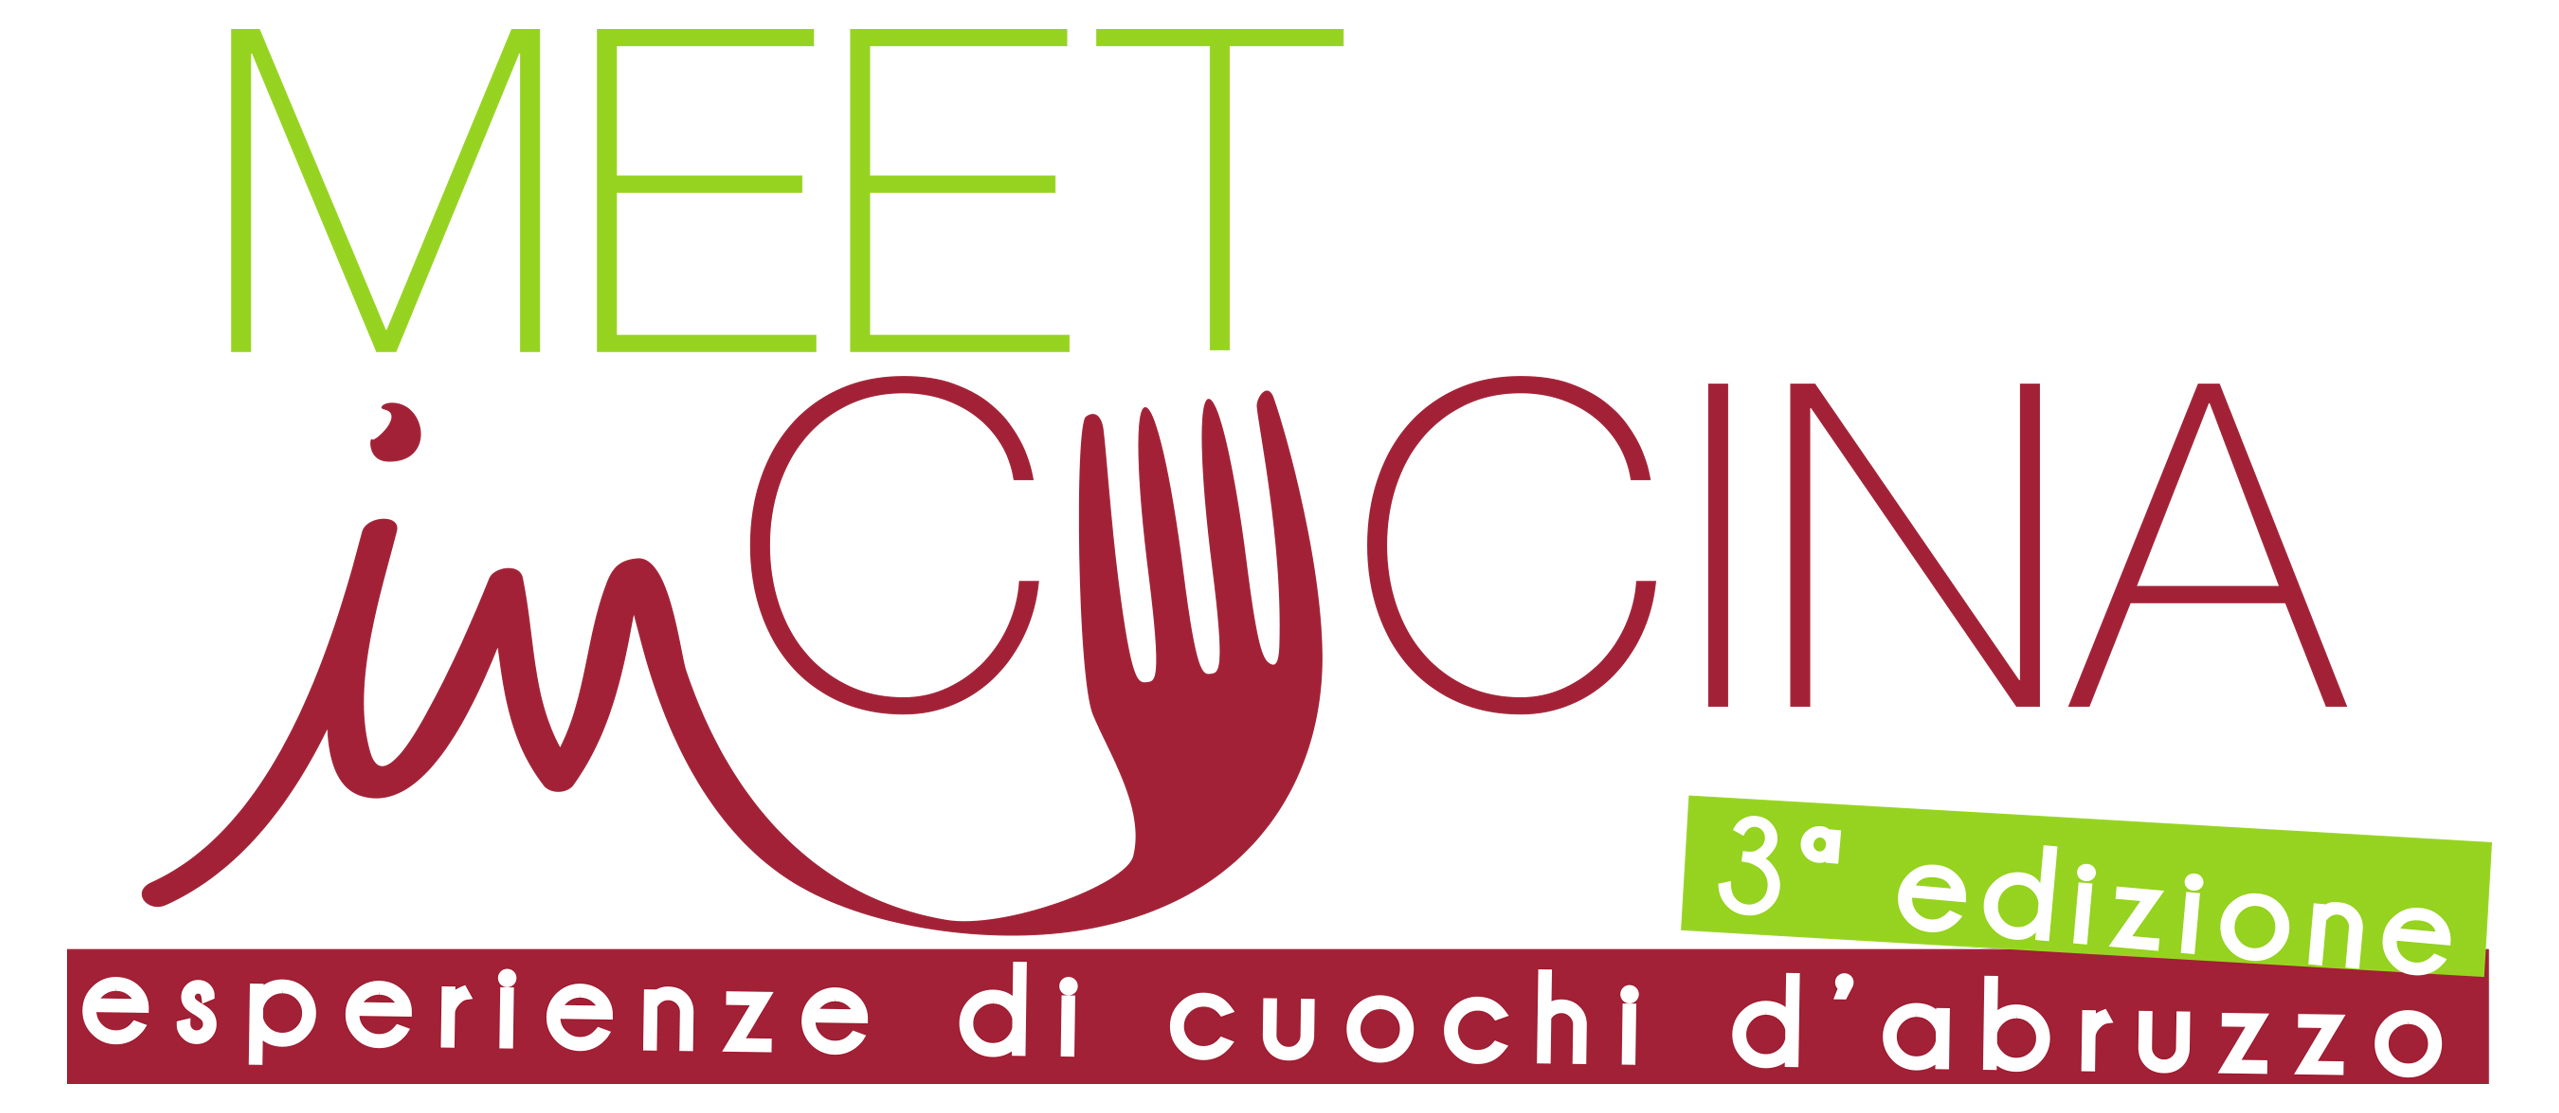 meet3 logo